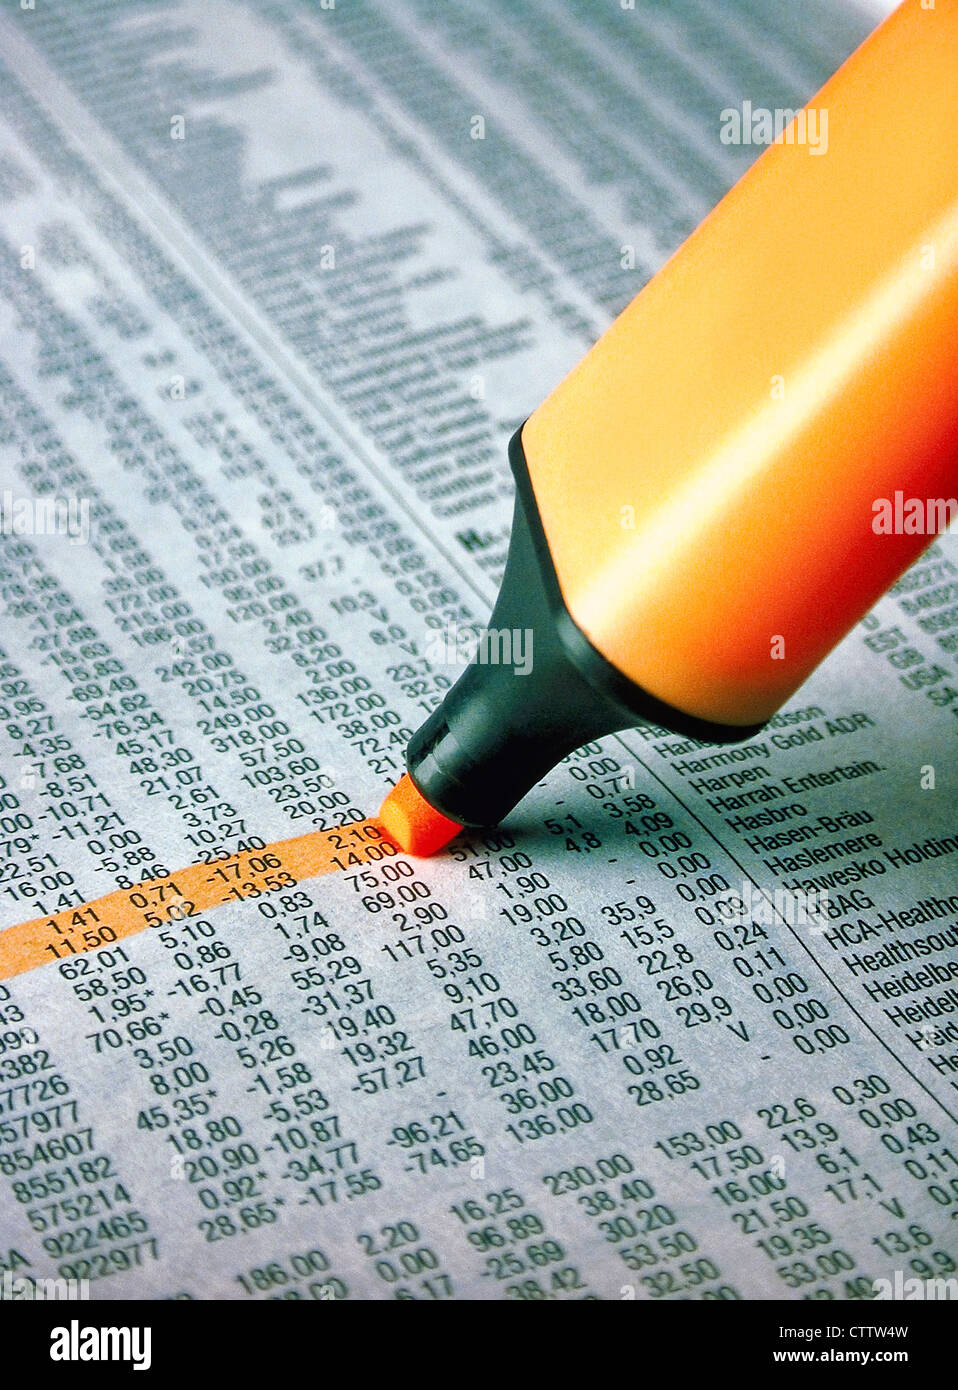 Textmarker markiert Aktienkurse im Wirtschaftsteil einer Zeitung Foto de stock